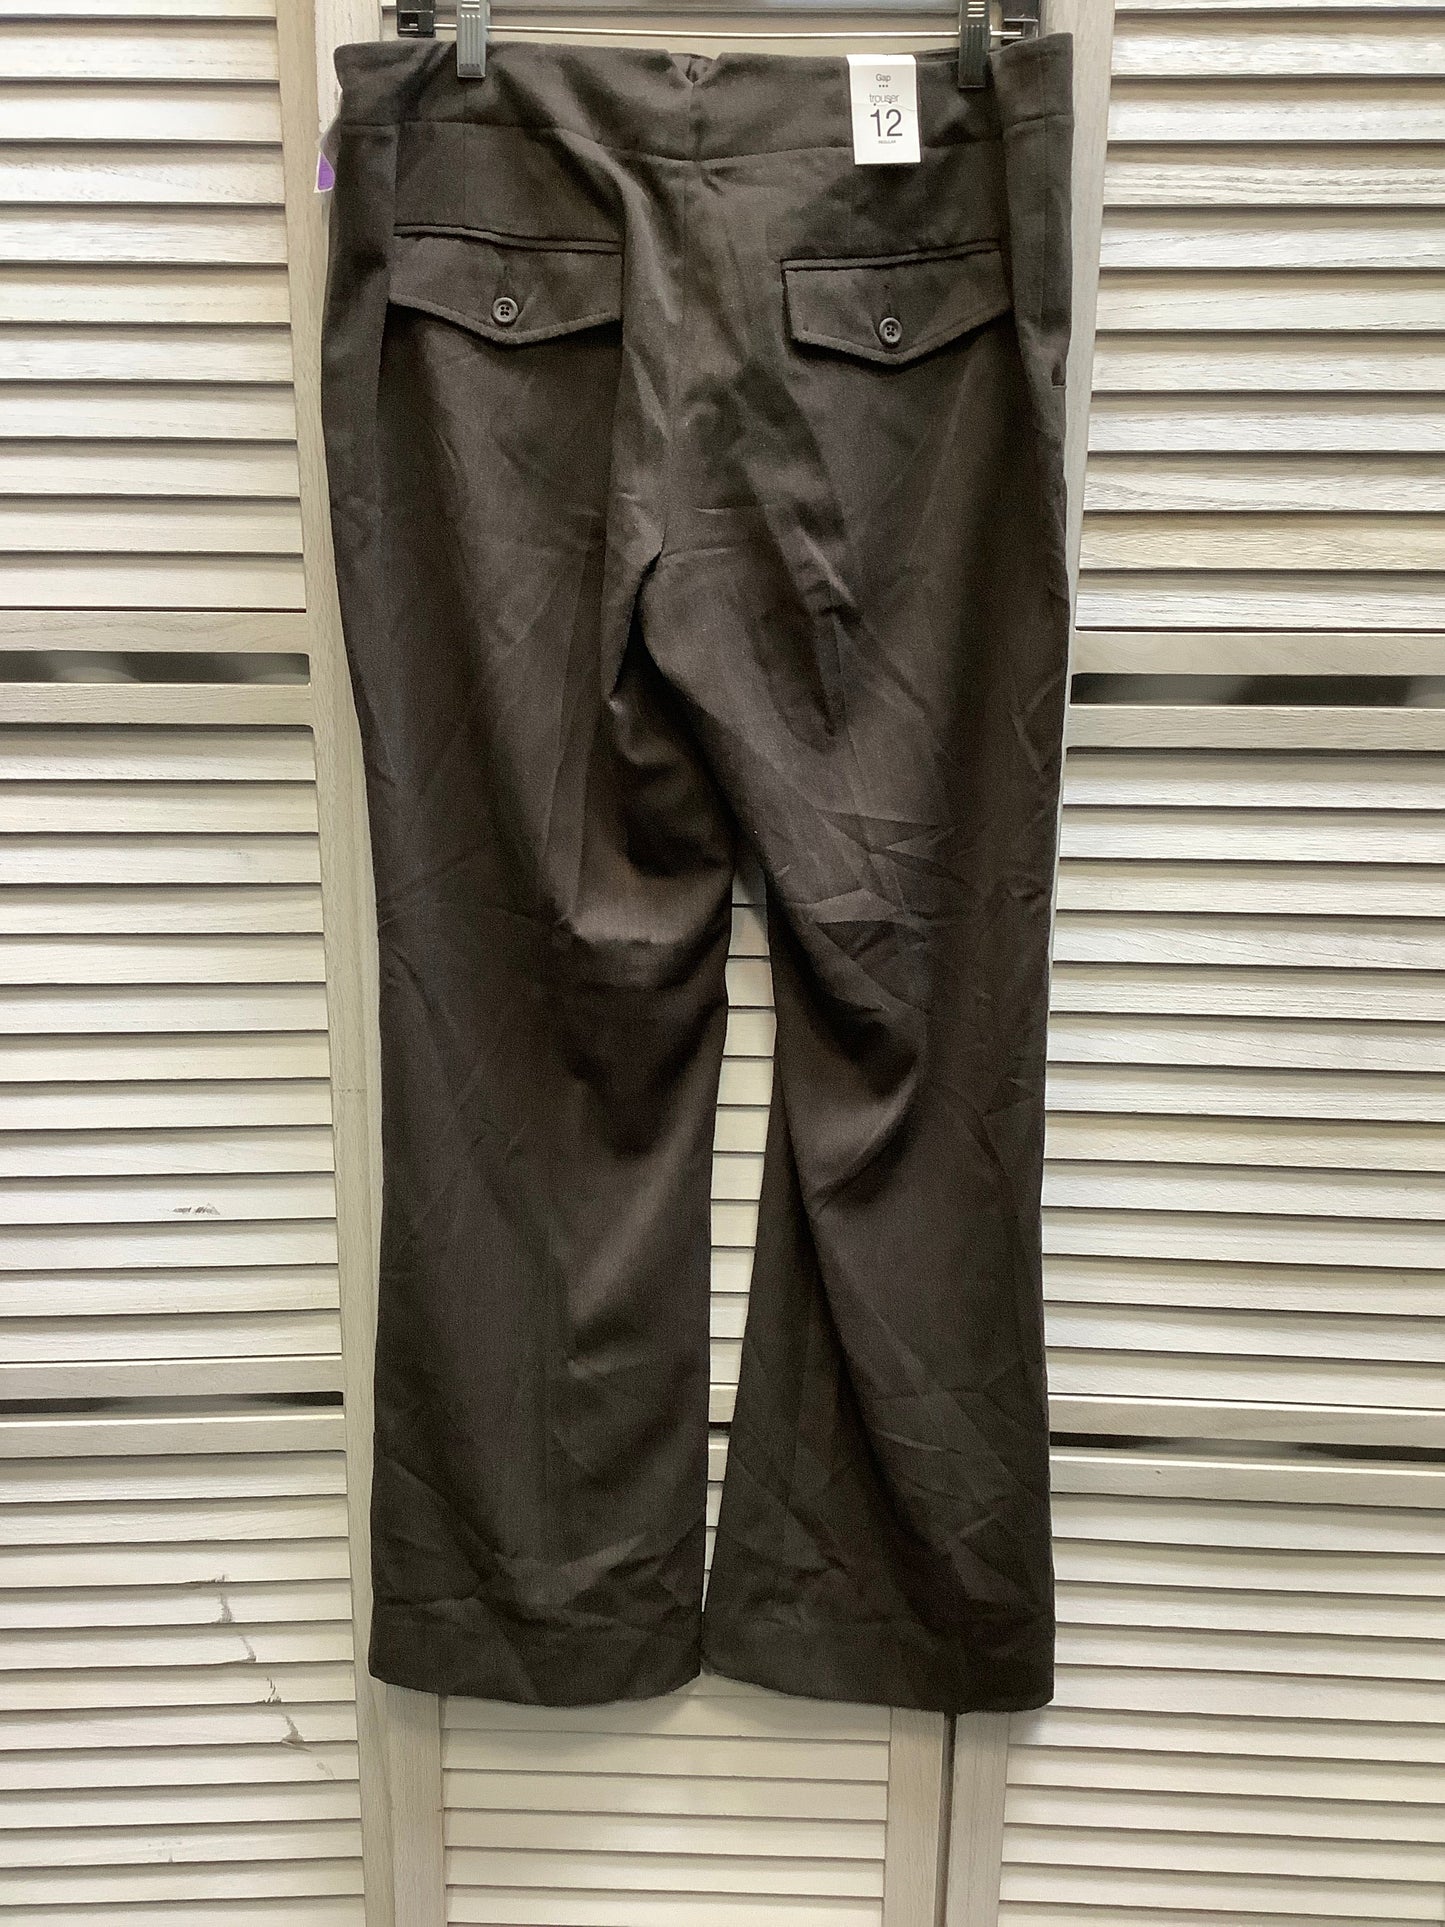 Brown Pants Dress Gap, Size 12